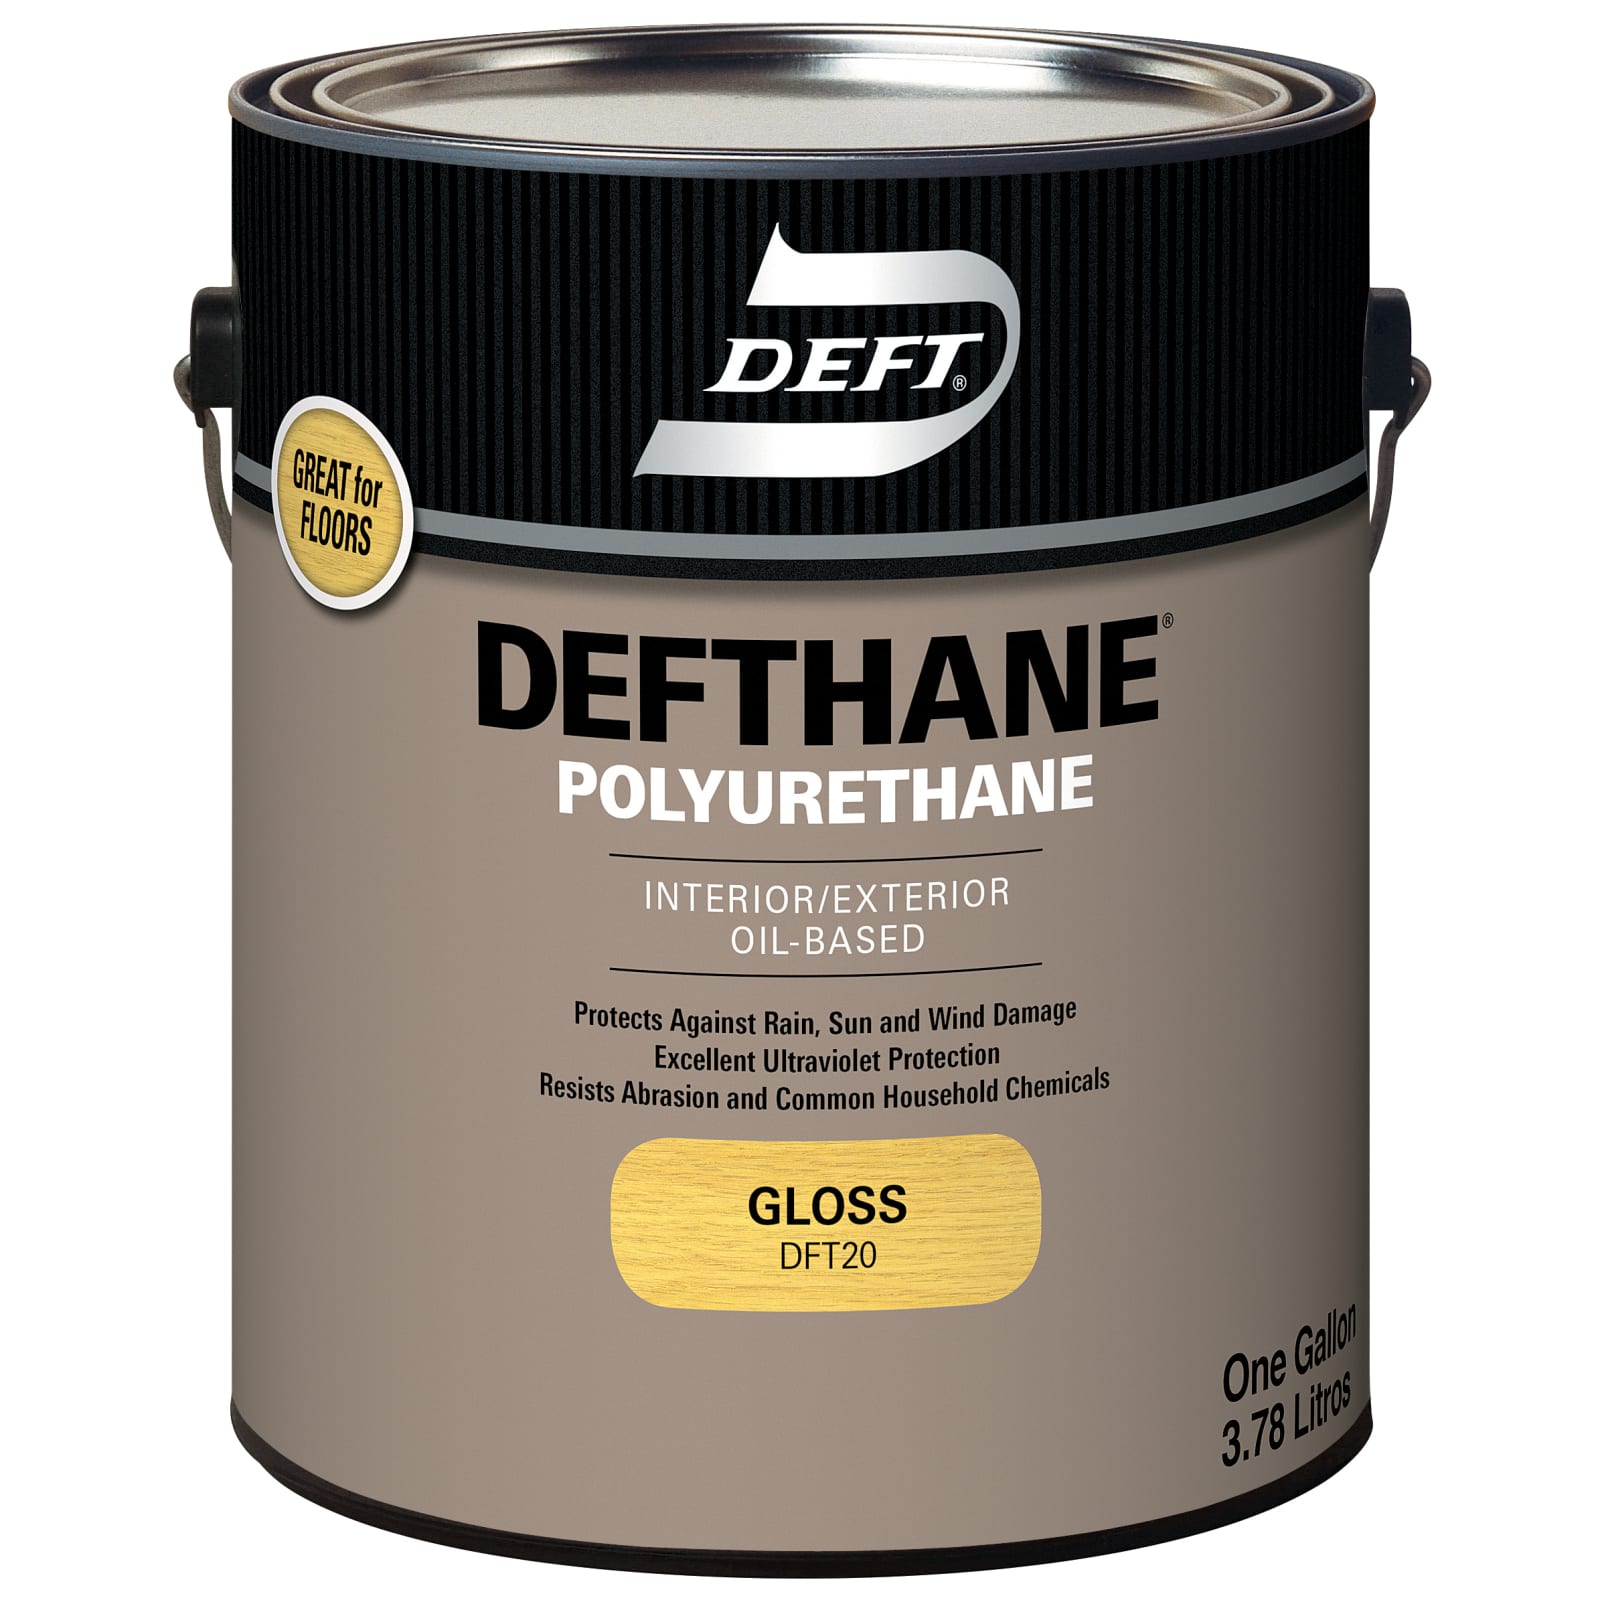 Defthane Polyurethane Clear Gloss by Deft at Fleet Farm